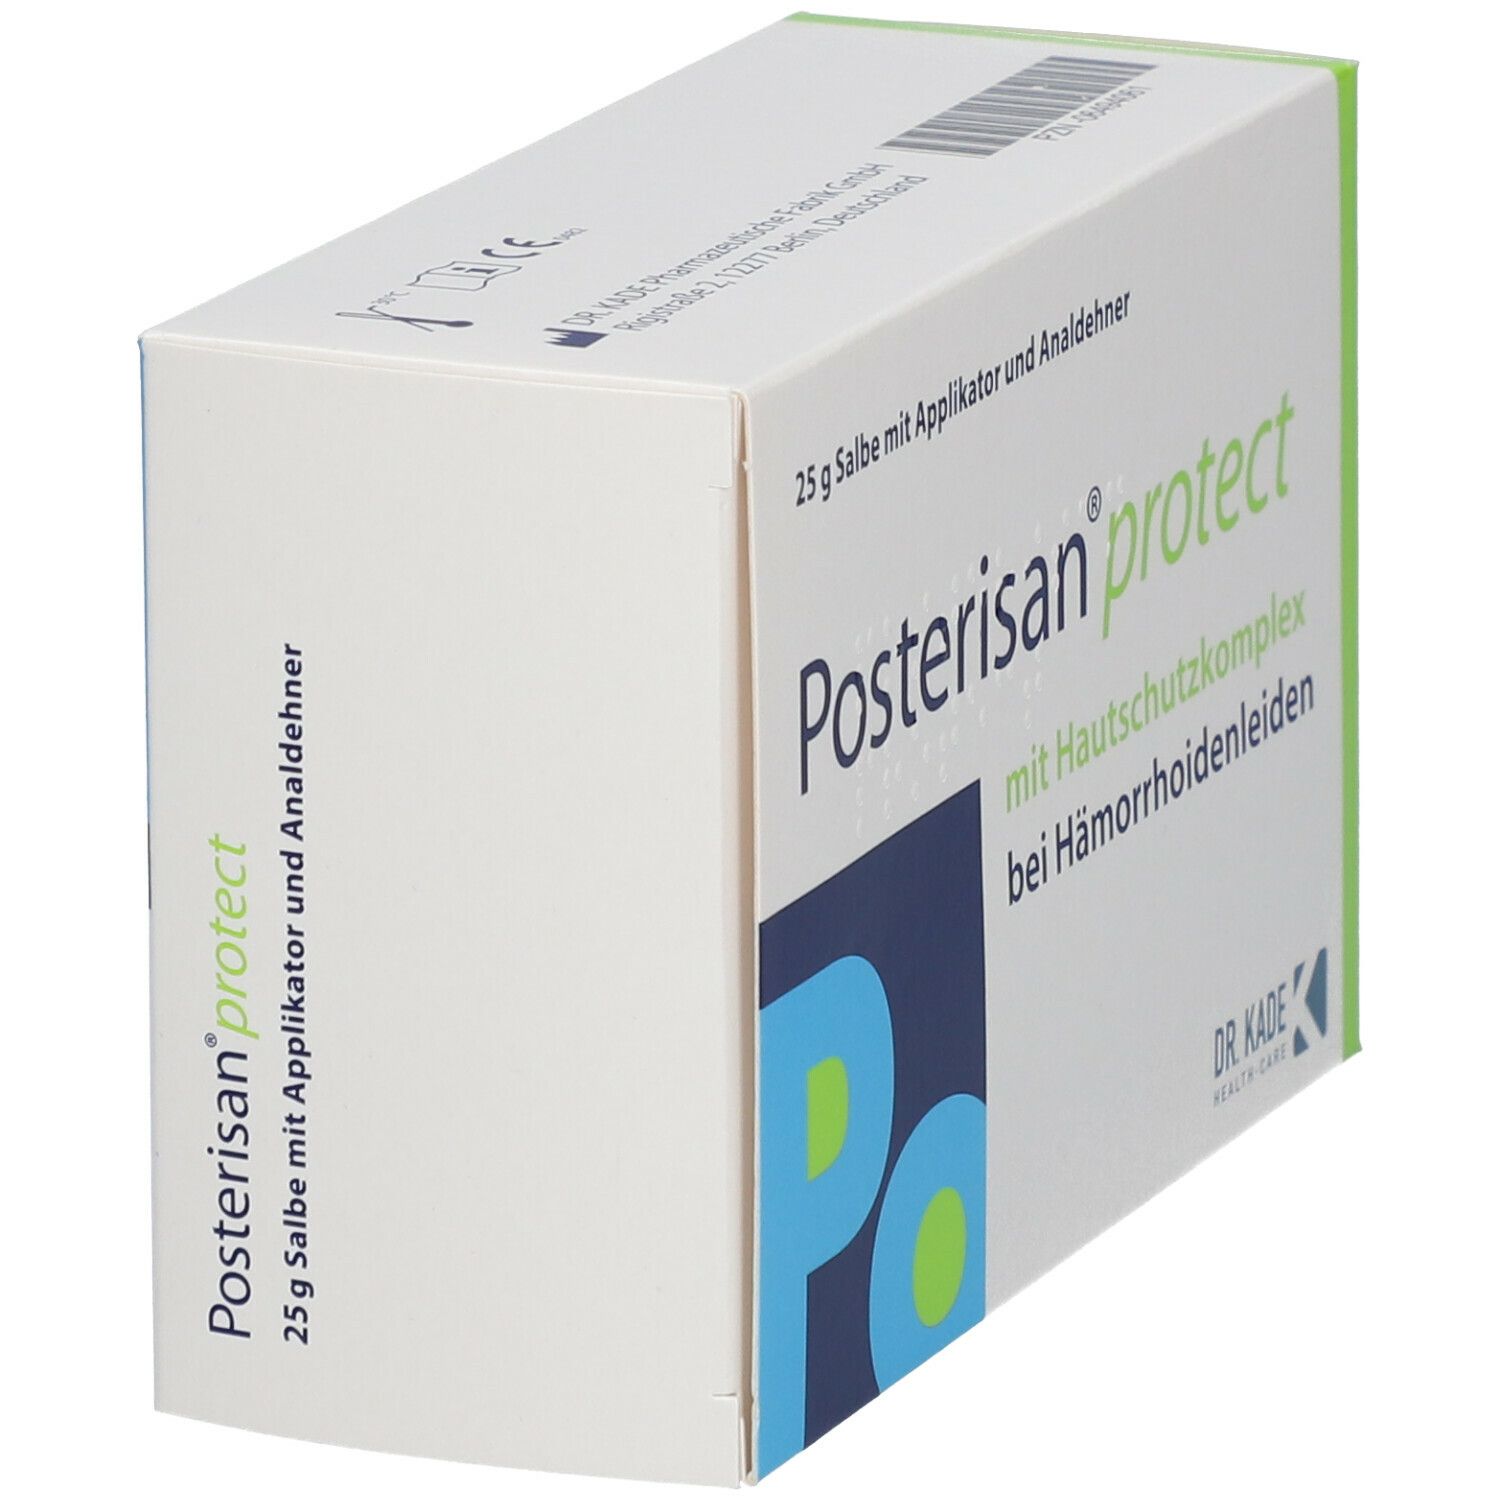 Posterisan® protect mit Analdehner